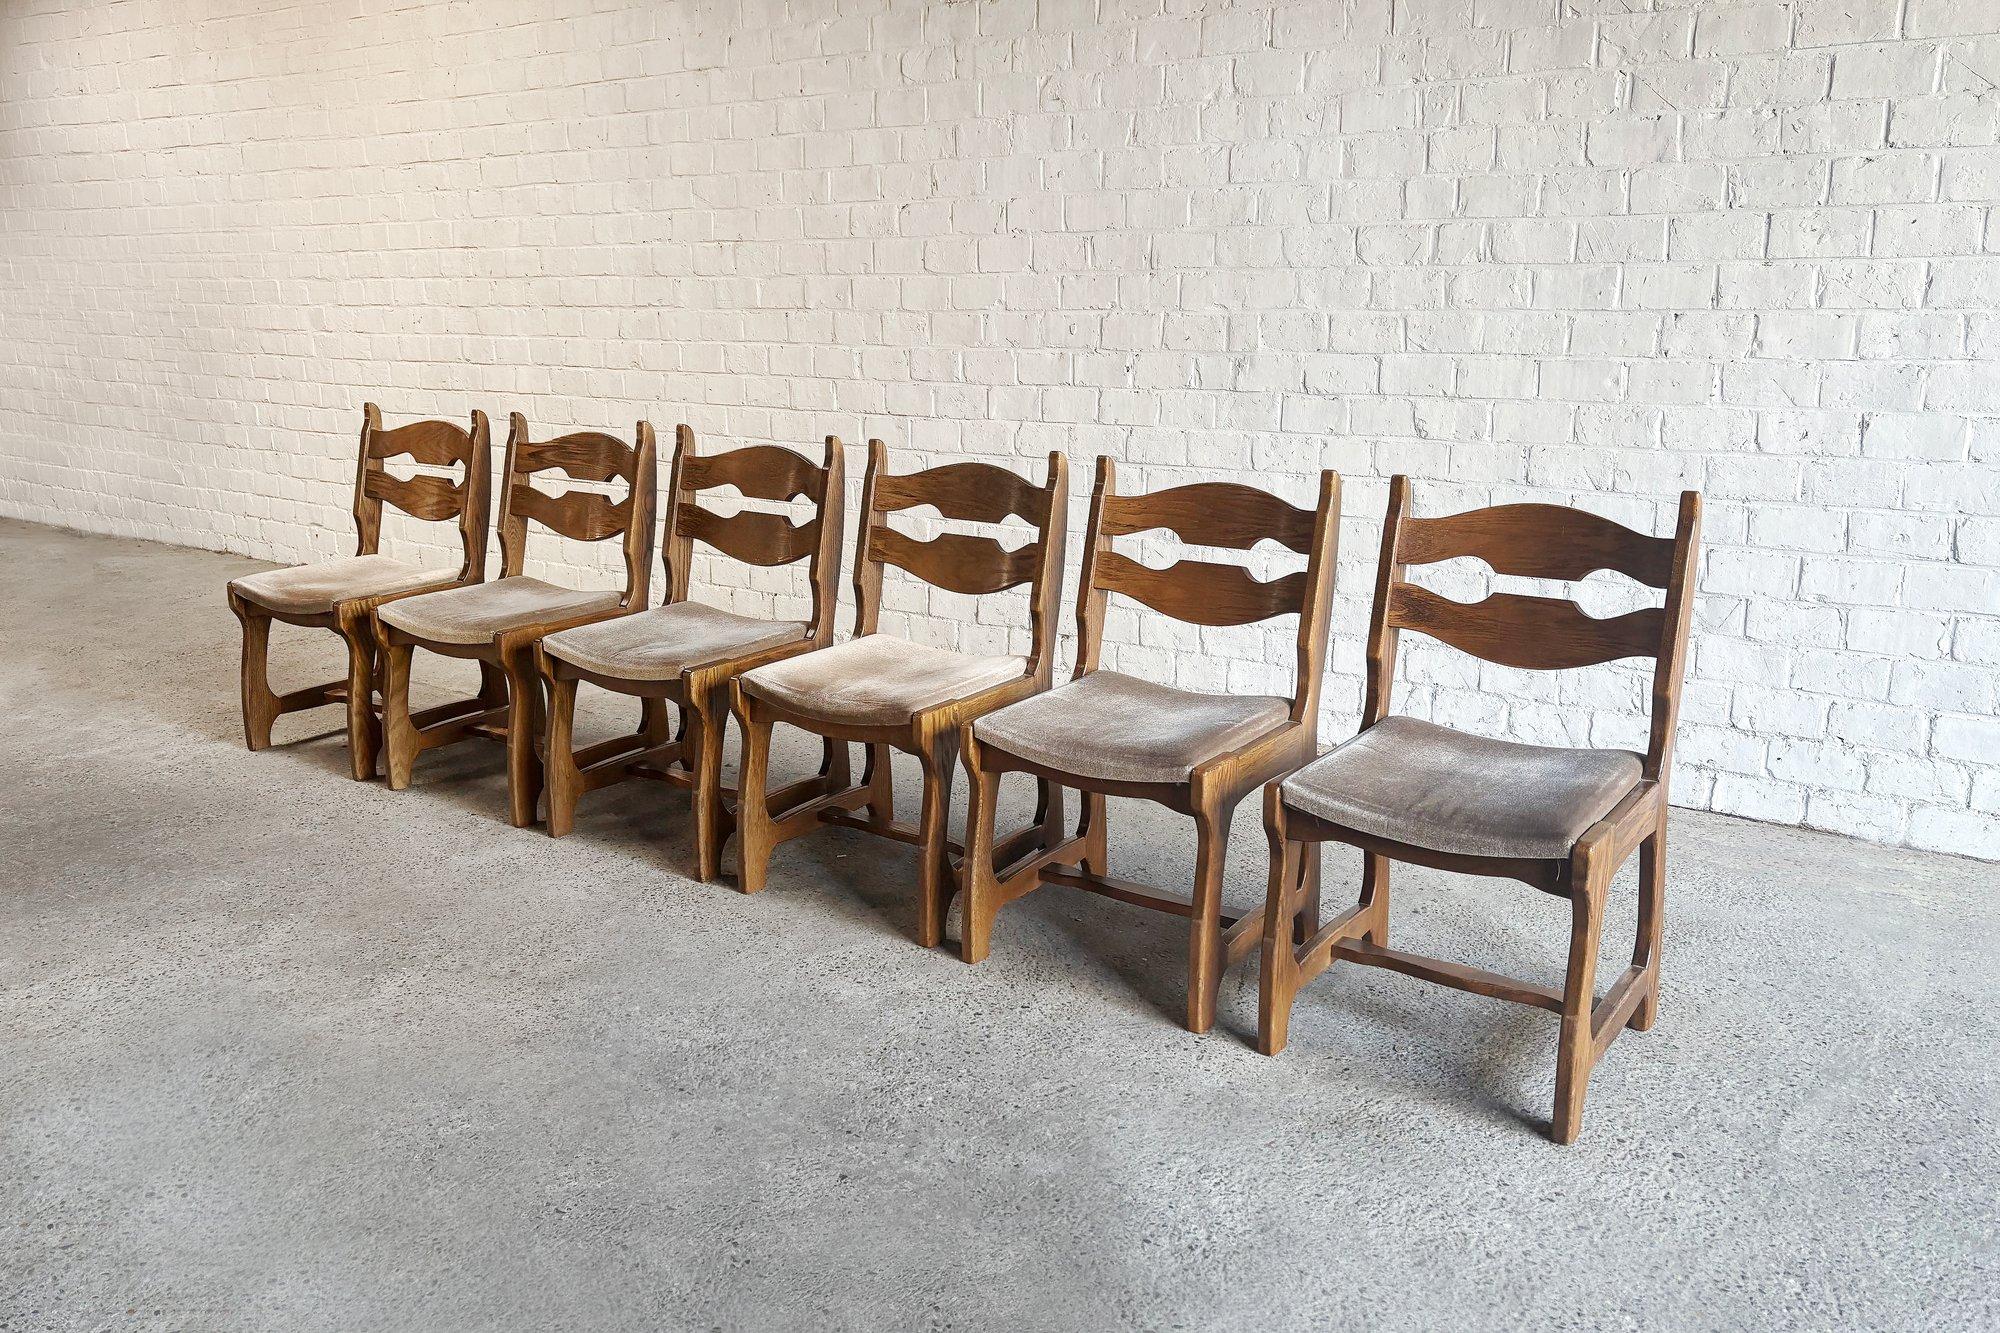 Wunderschöner und ungewöhnlicher Satz von 6 massiven Eichenstühlen, entworfen von Guillerme und Chambron für Votre Maison, um 1950. Originale beigefarbene Samtsitze. Diese Stühle vermitteln einen brutalistischen und zugleich organischen Look.